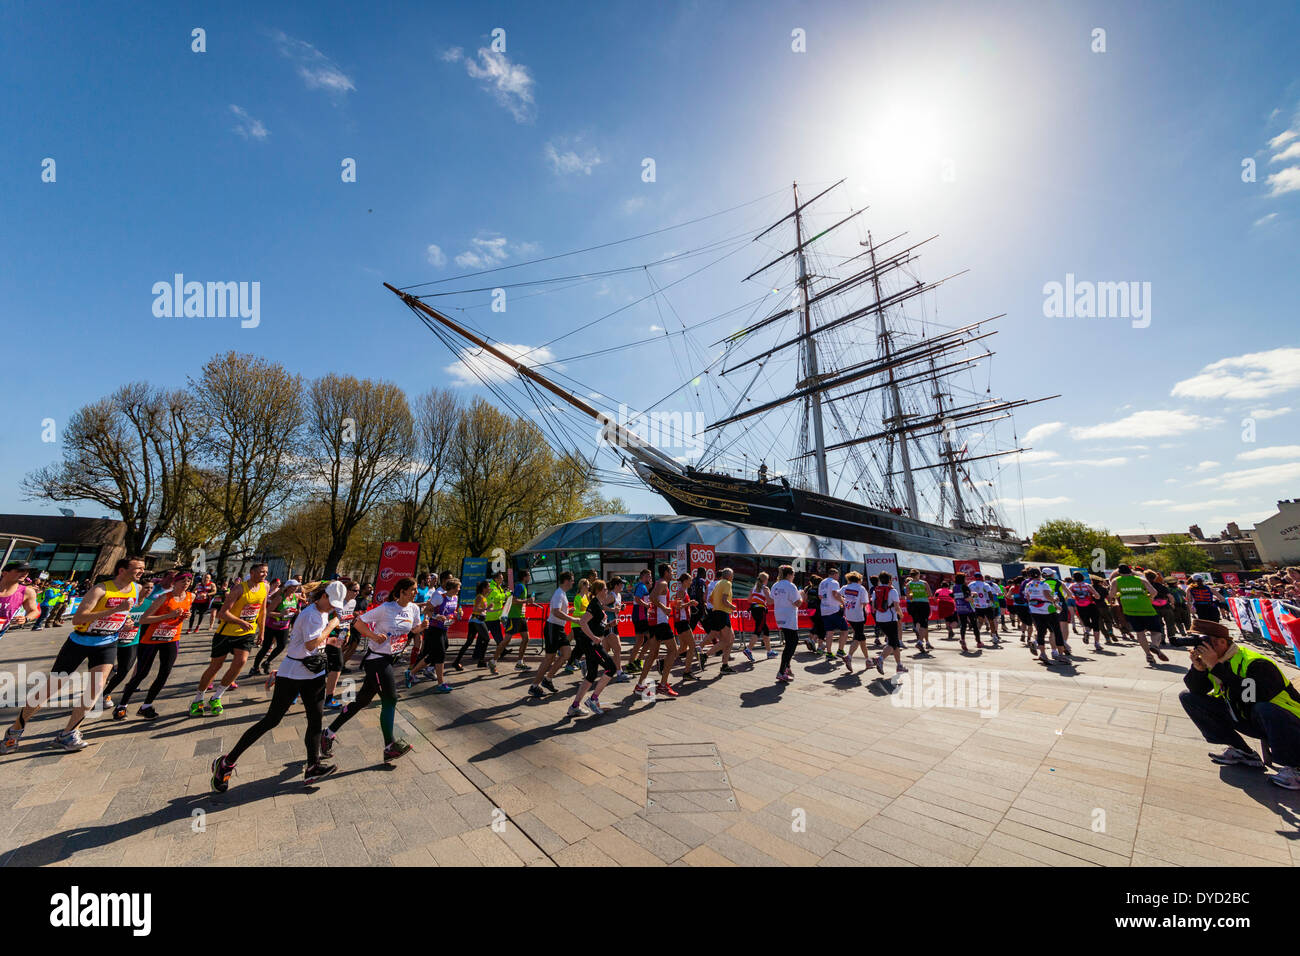 London UK. 13 avril 2014 Virgin Money London marathoniens encerclant le Cutty Sark clipper ship à Greenwich au cours de la race Crédit : John Henshall/Alamy Live News JMH6150 Banque D'Images